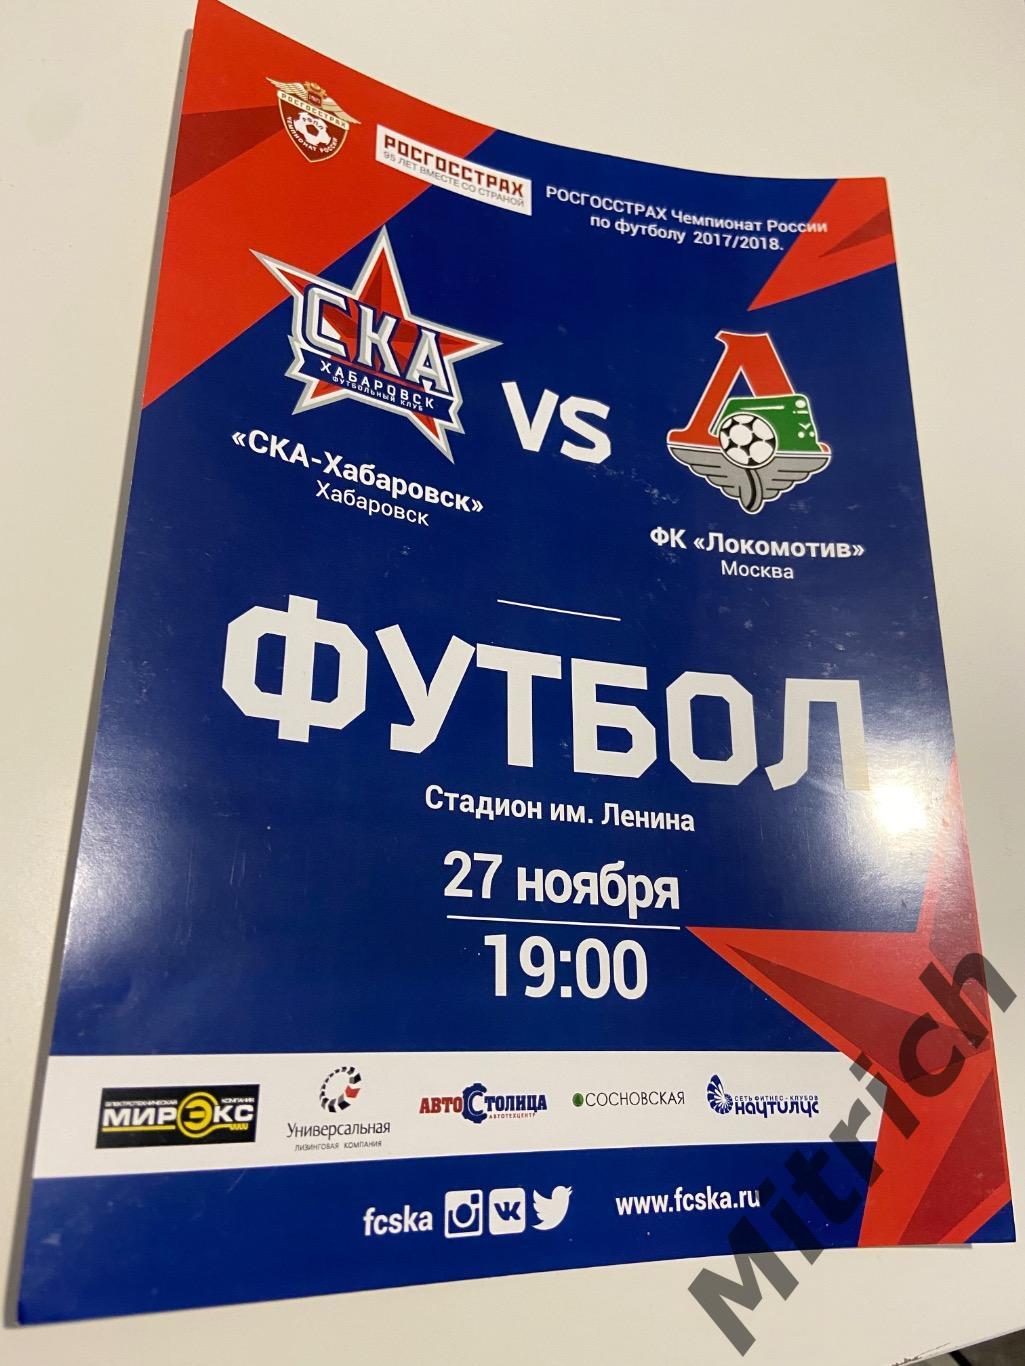 АФИША СКА Хабаровск - ФК Локомотив Москва 2017 / 2018